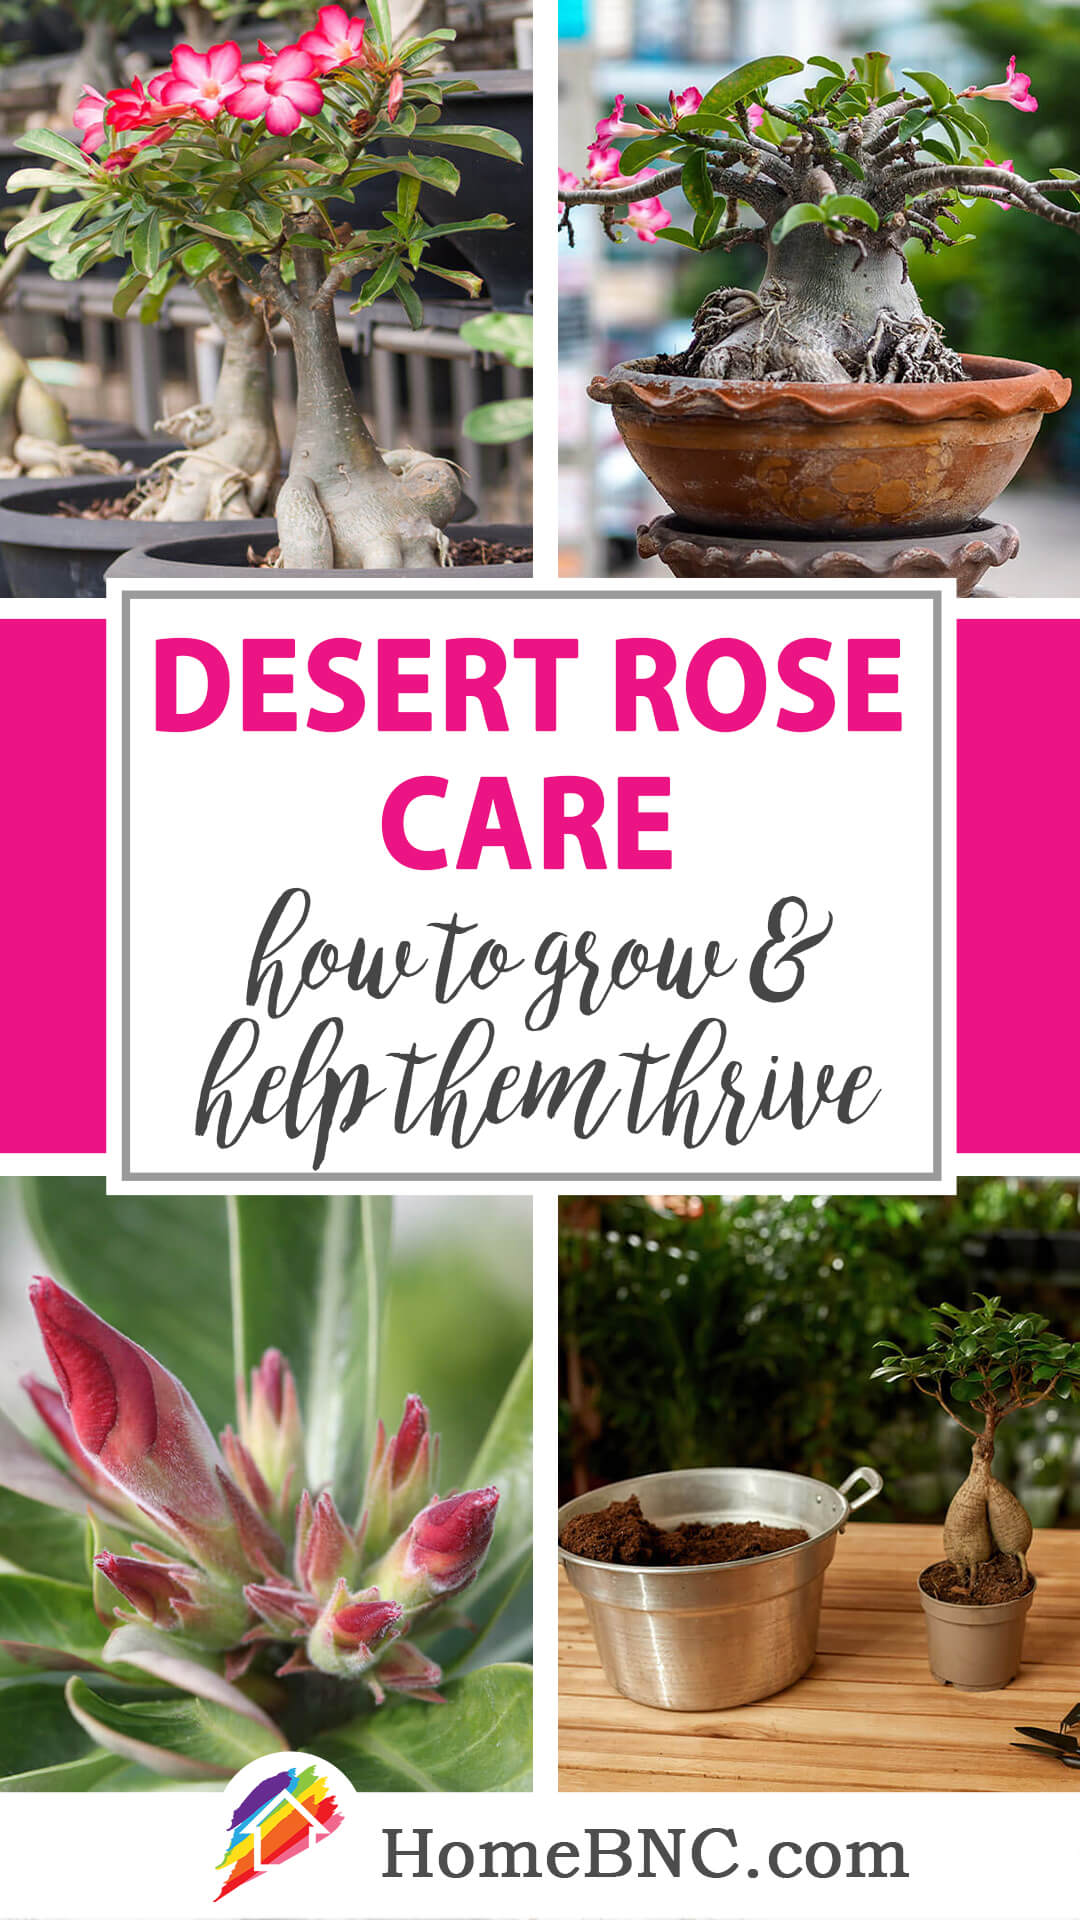 Desert rose care